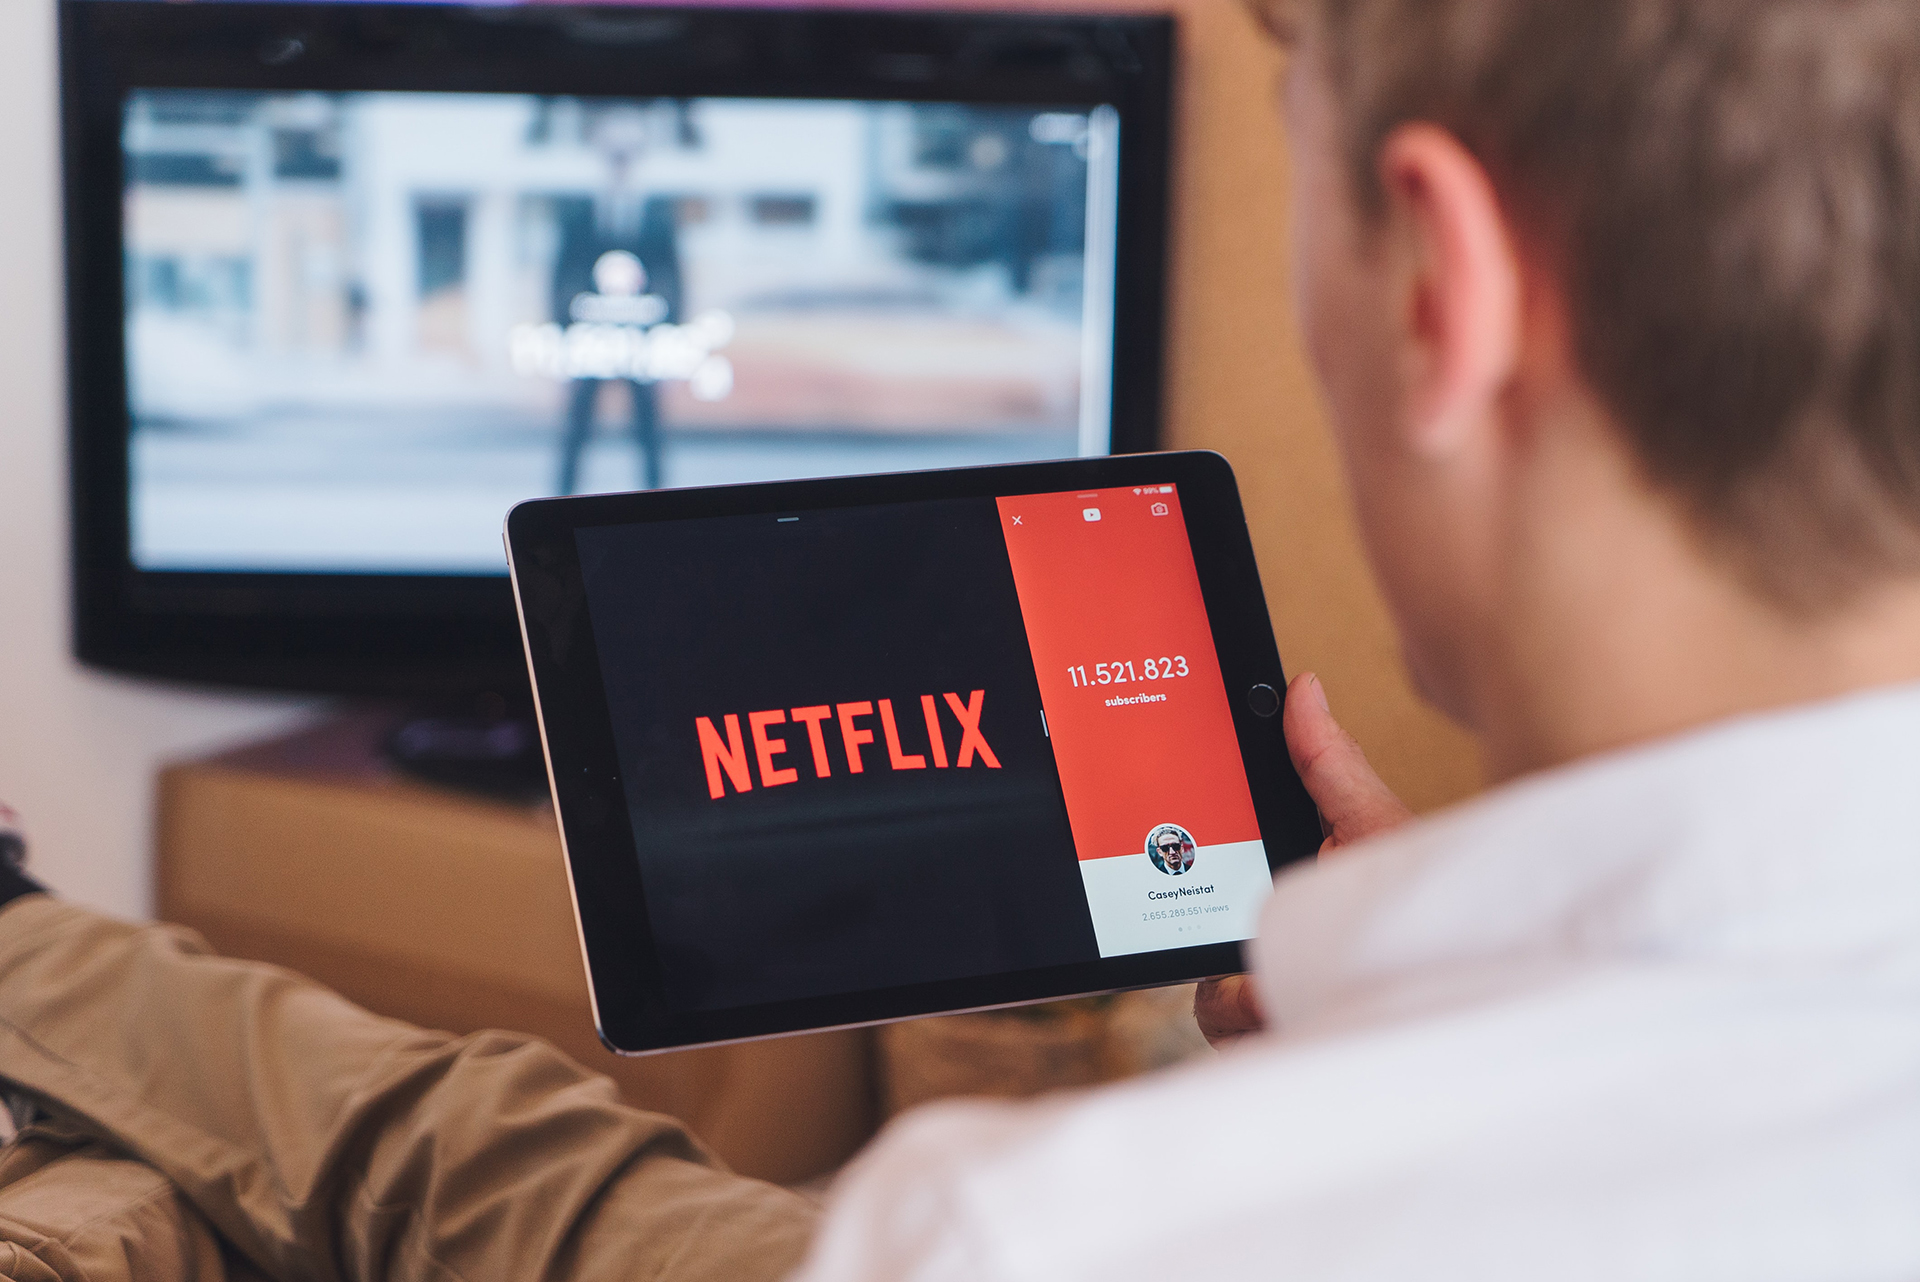 Netflix planifikon të shtojë reklama në platformë për ata që duan të paguajnë më pak